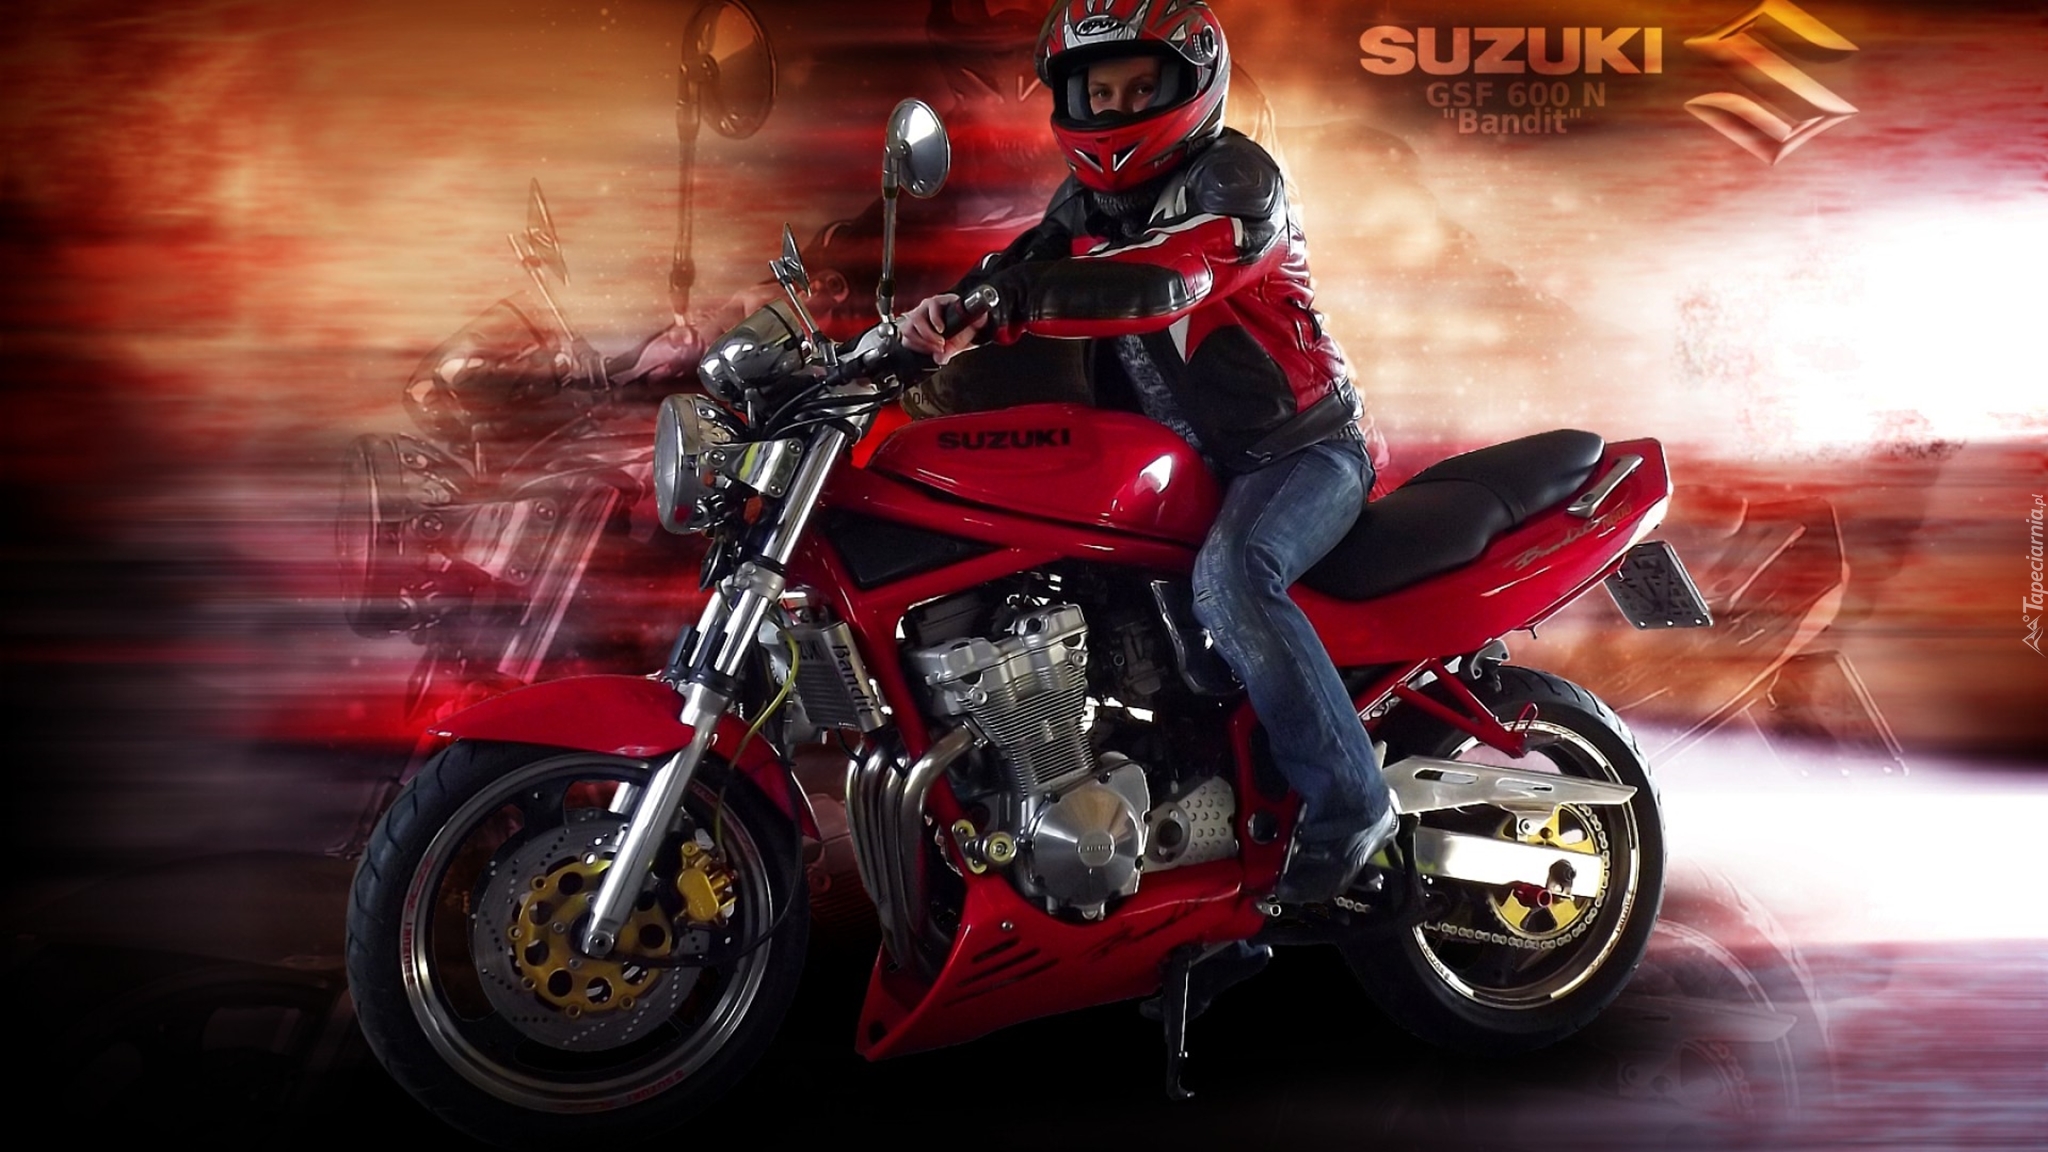 149539_suzuki_gsf_600_n_bandit_motocykl.